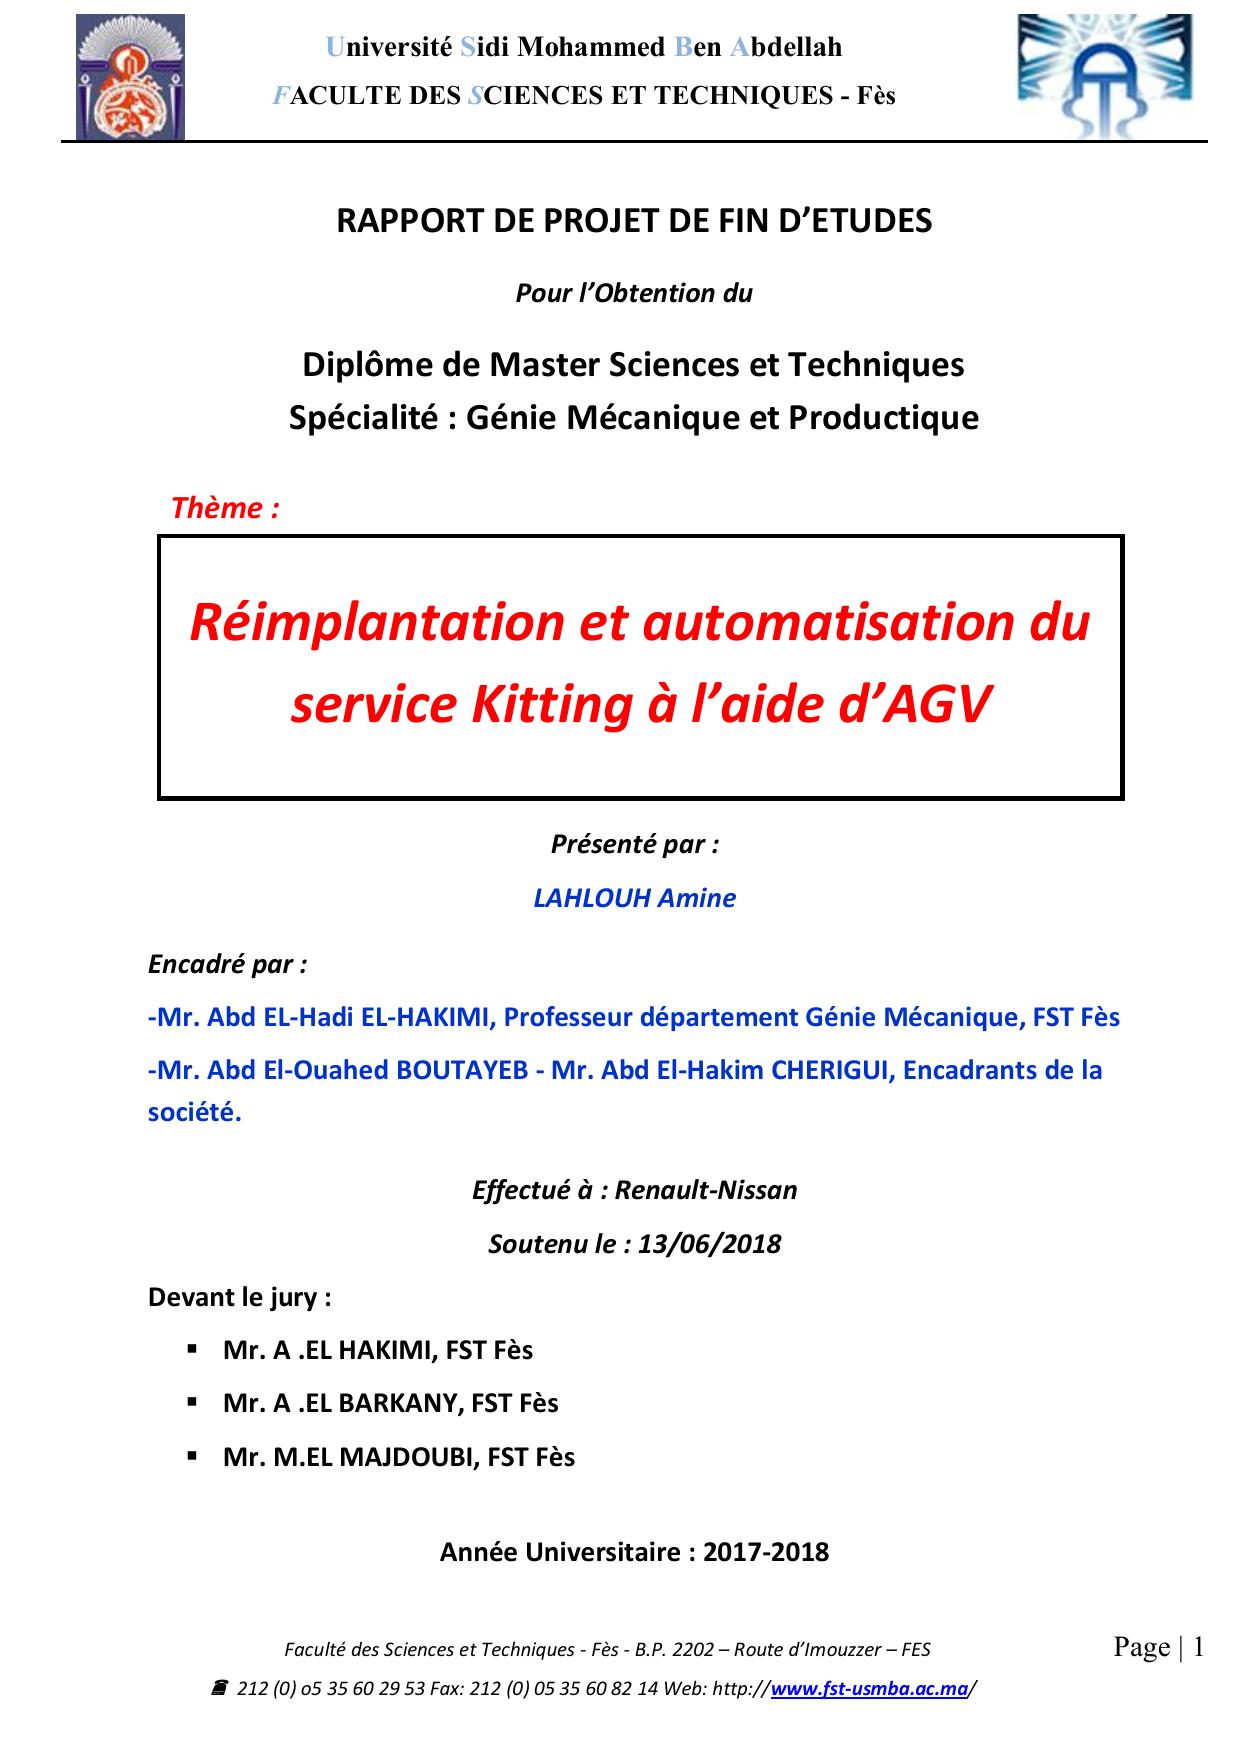 Réimplantation et automatisation du service Kitting à l’aide d’AGV